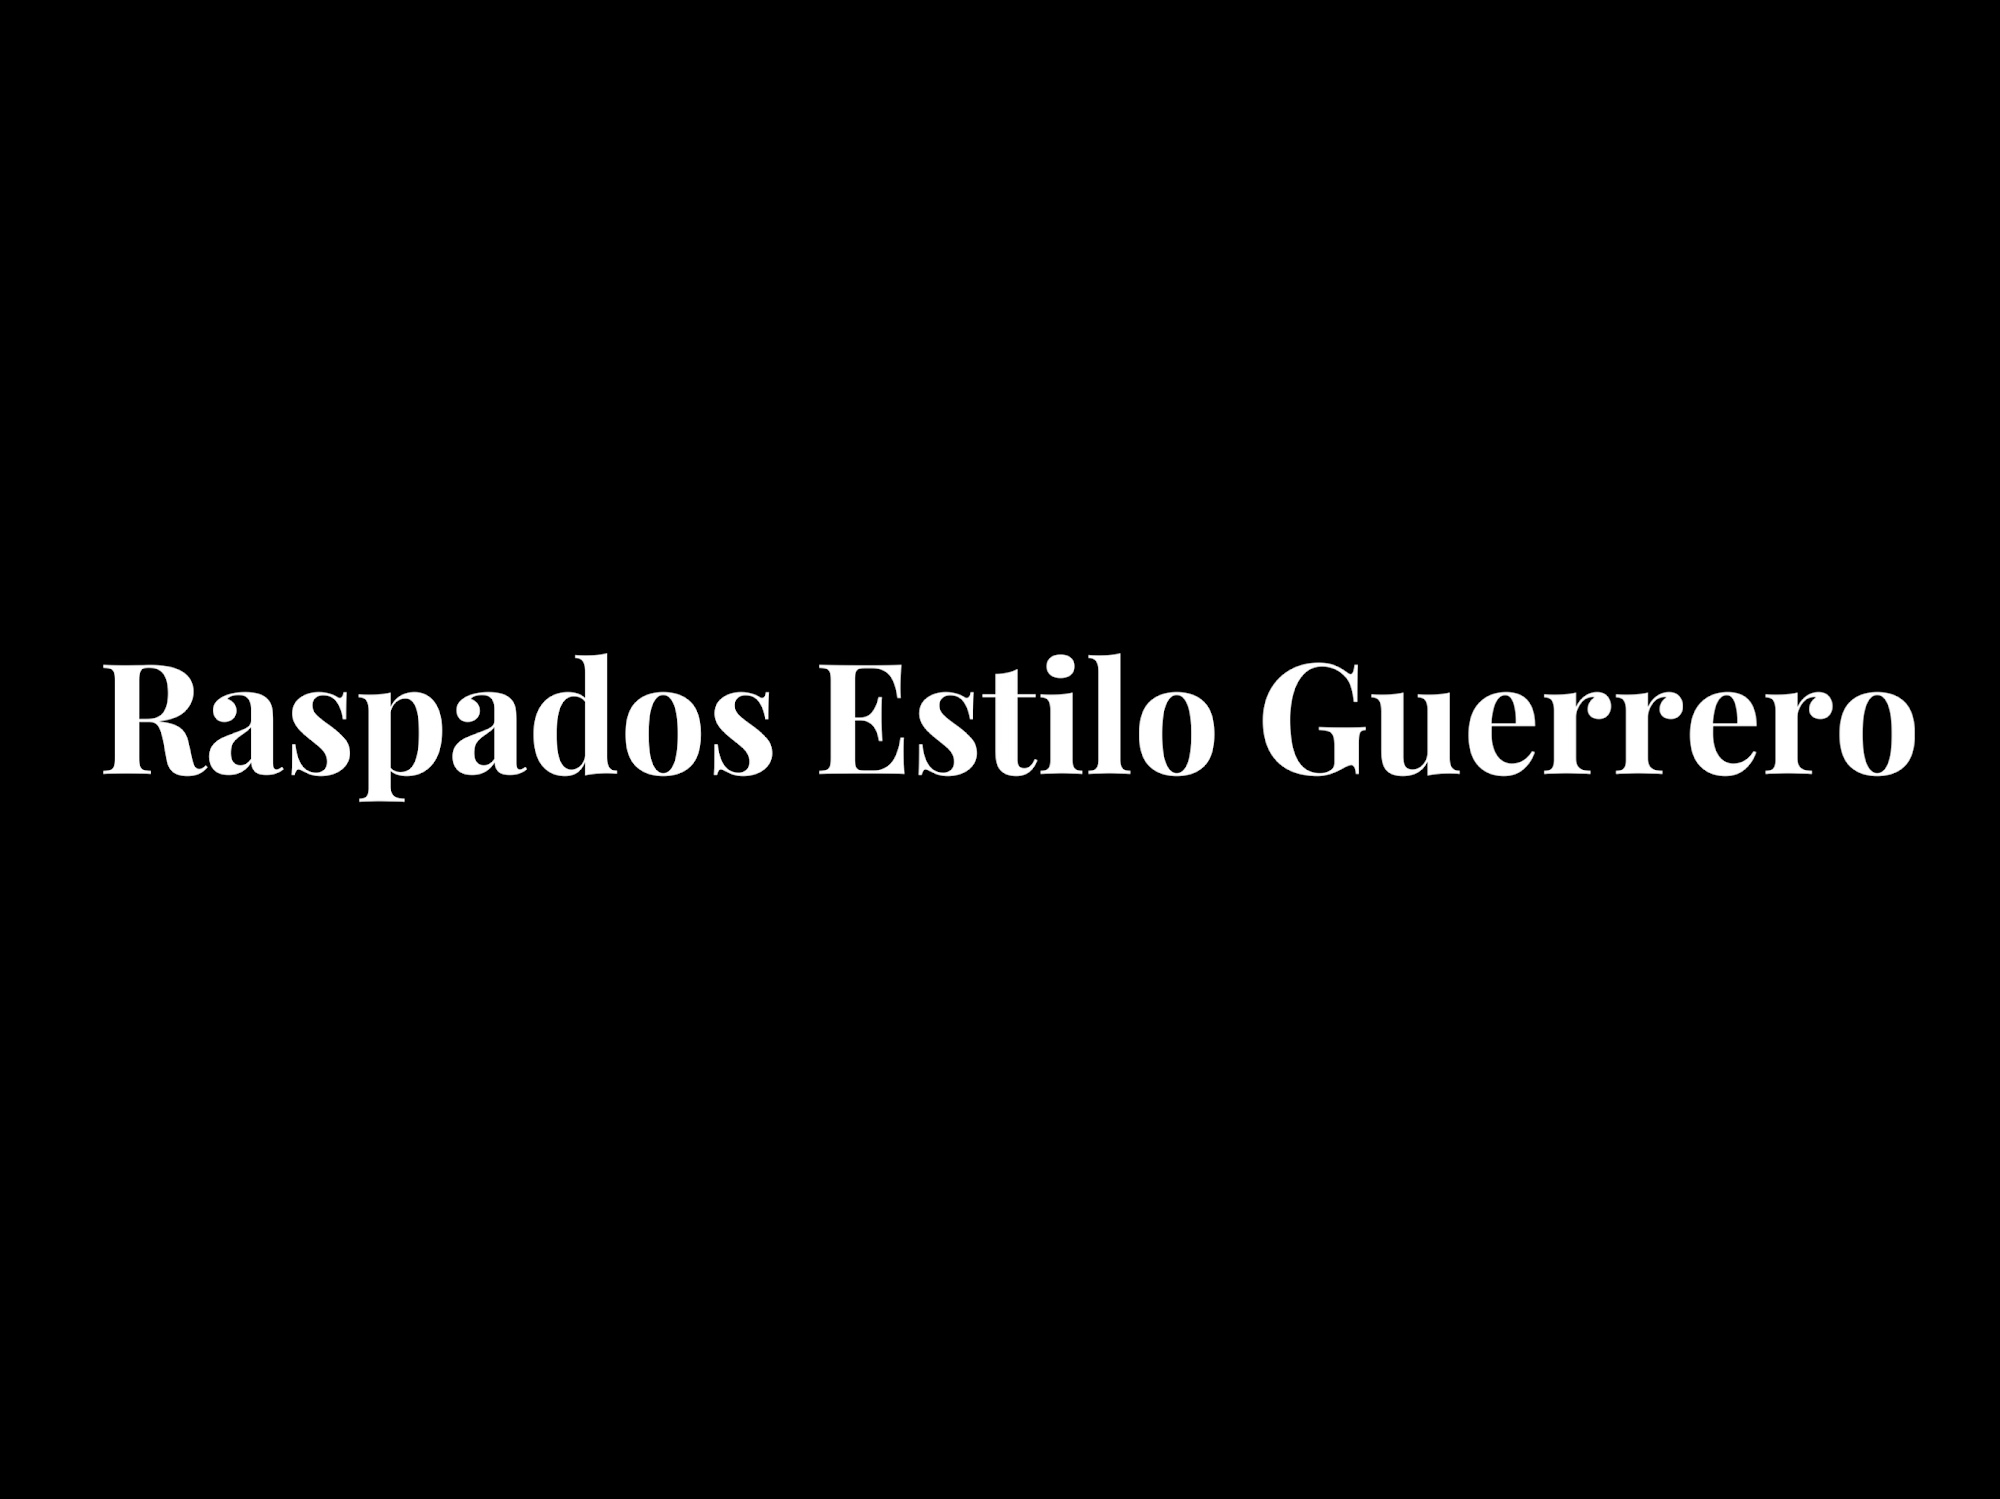 Raspados Estilo Guerrero